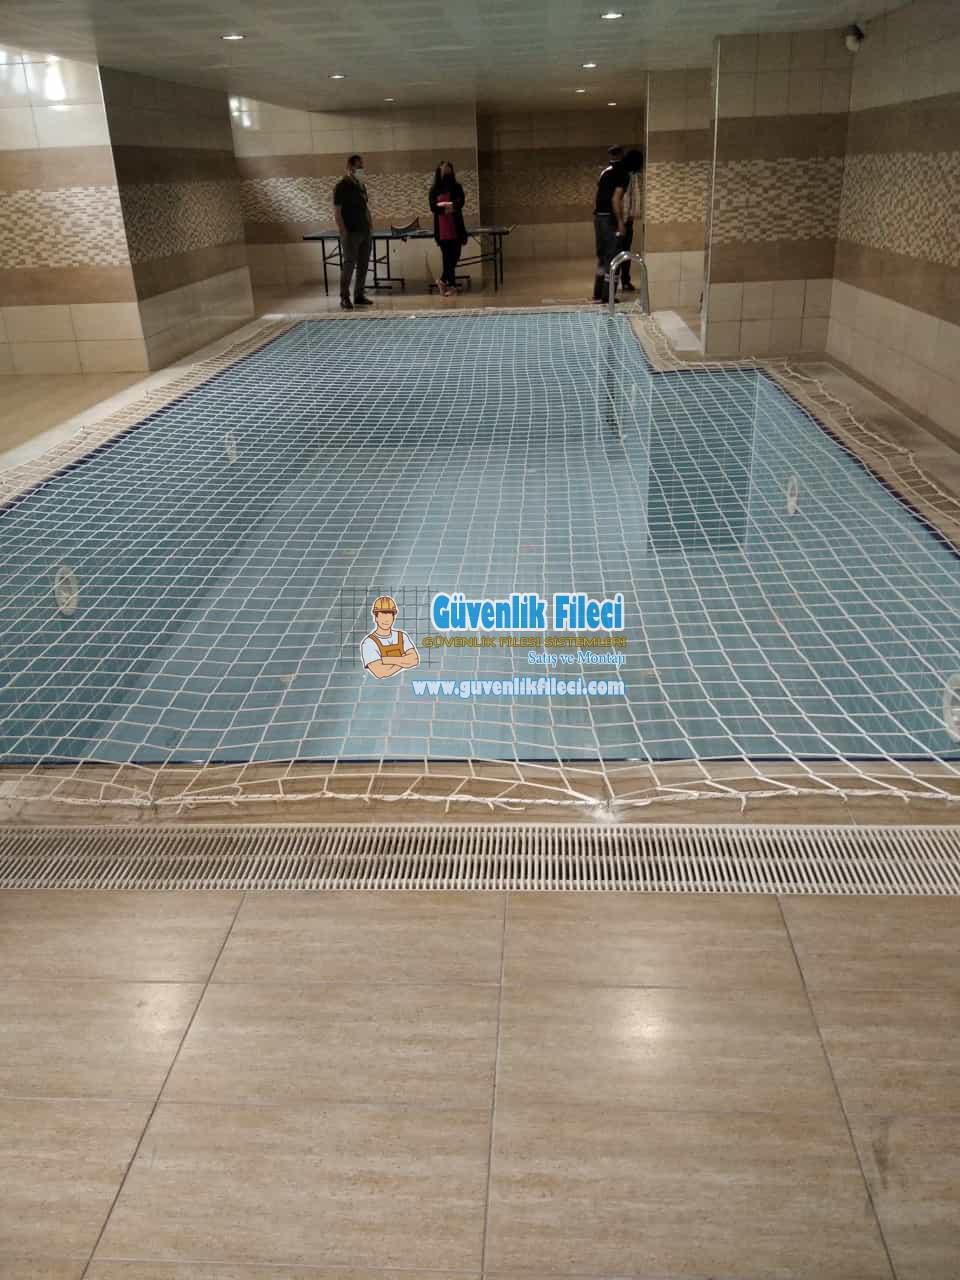 Ankara Şereflikoçhisar KALECİK HASAYAZ MAH. Havuz Güvenlik Filesi Projesi Devam Ediyor.